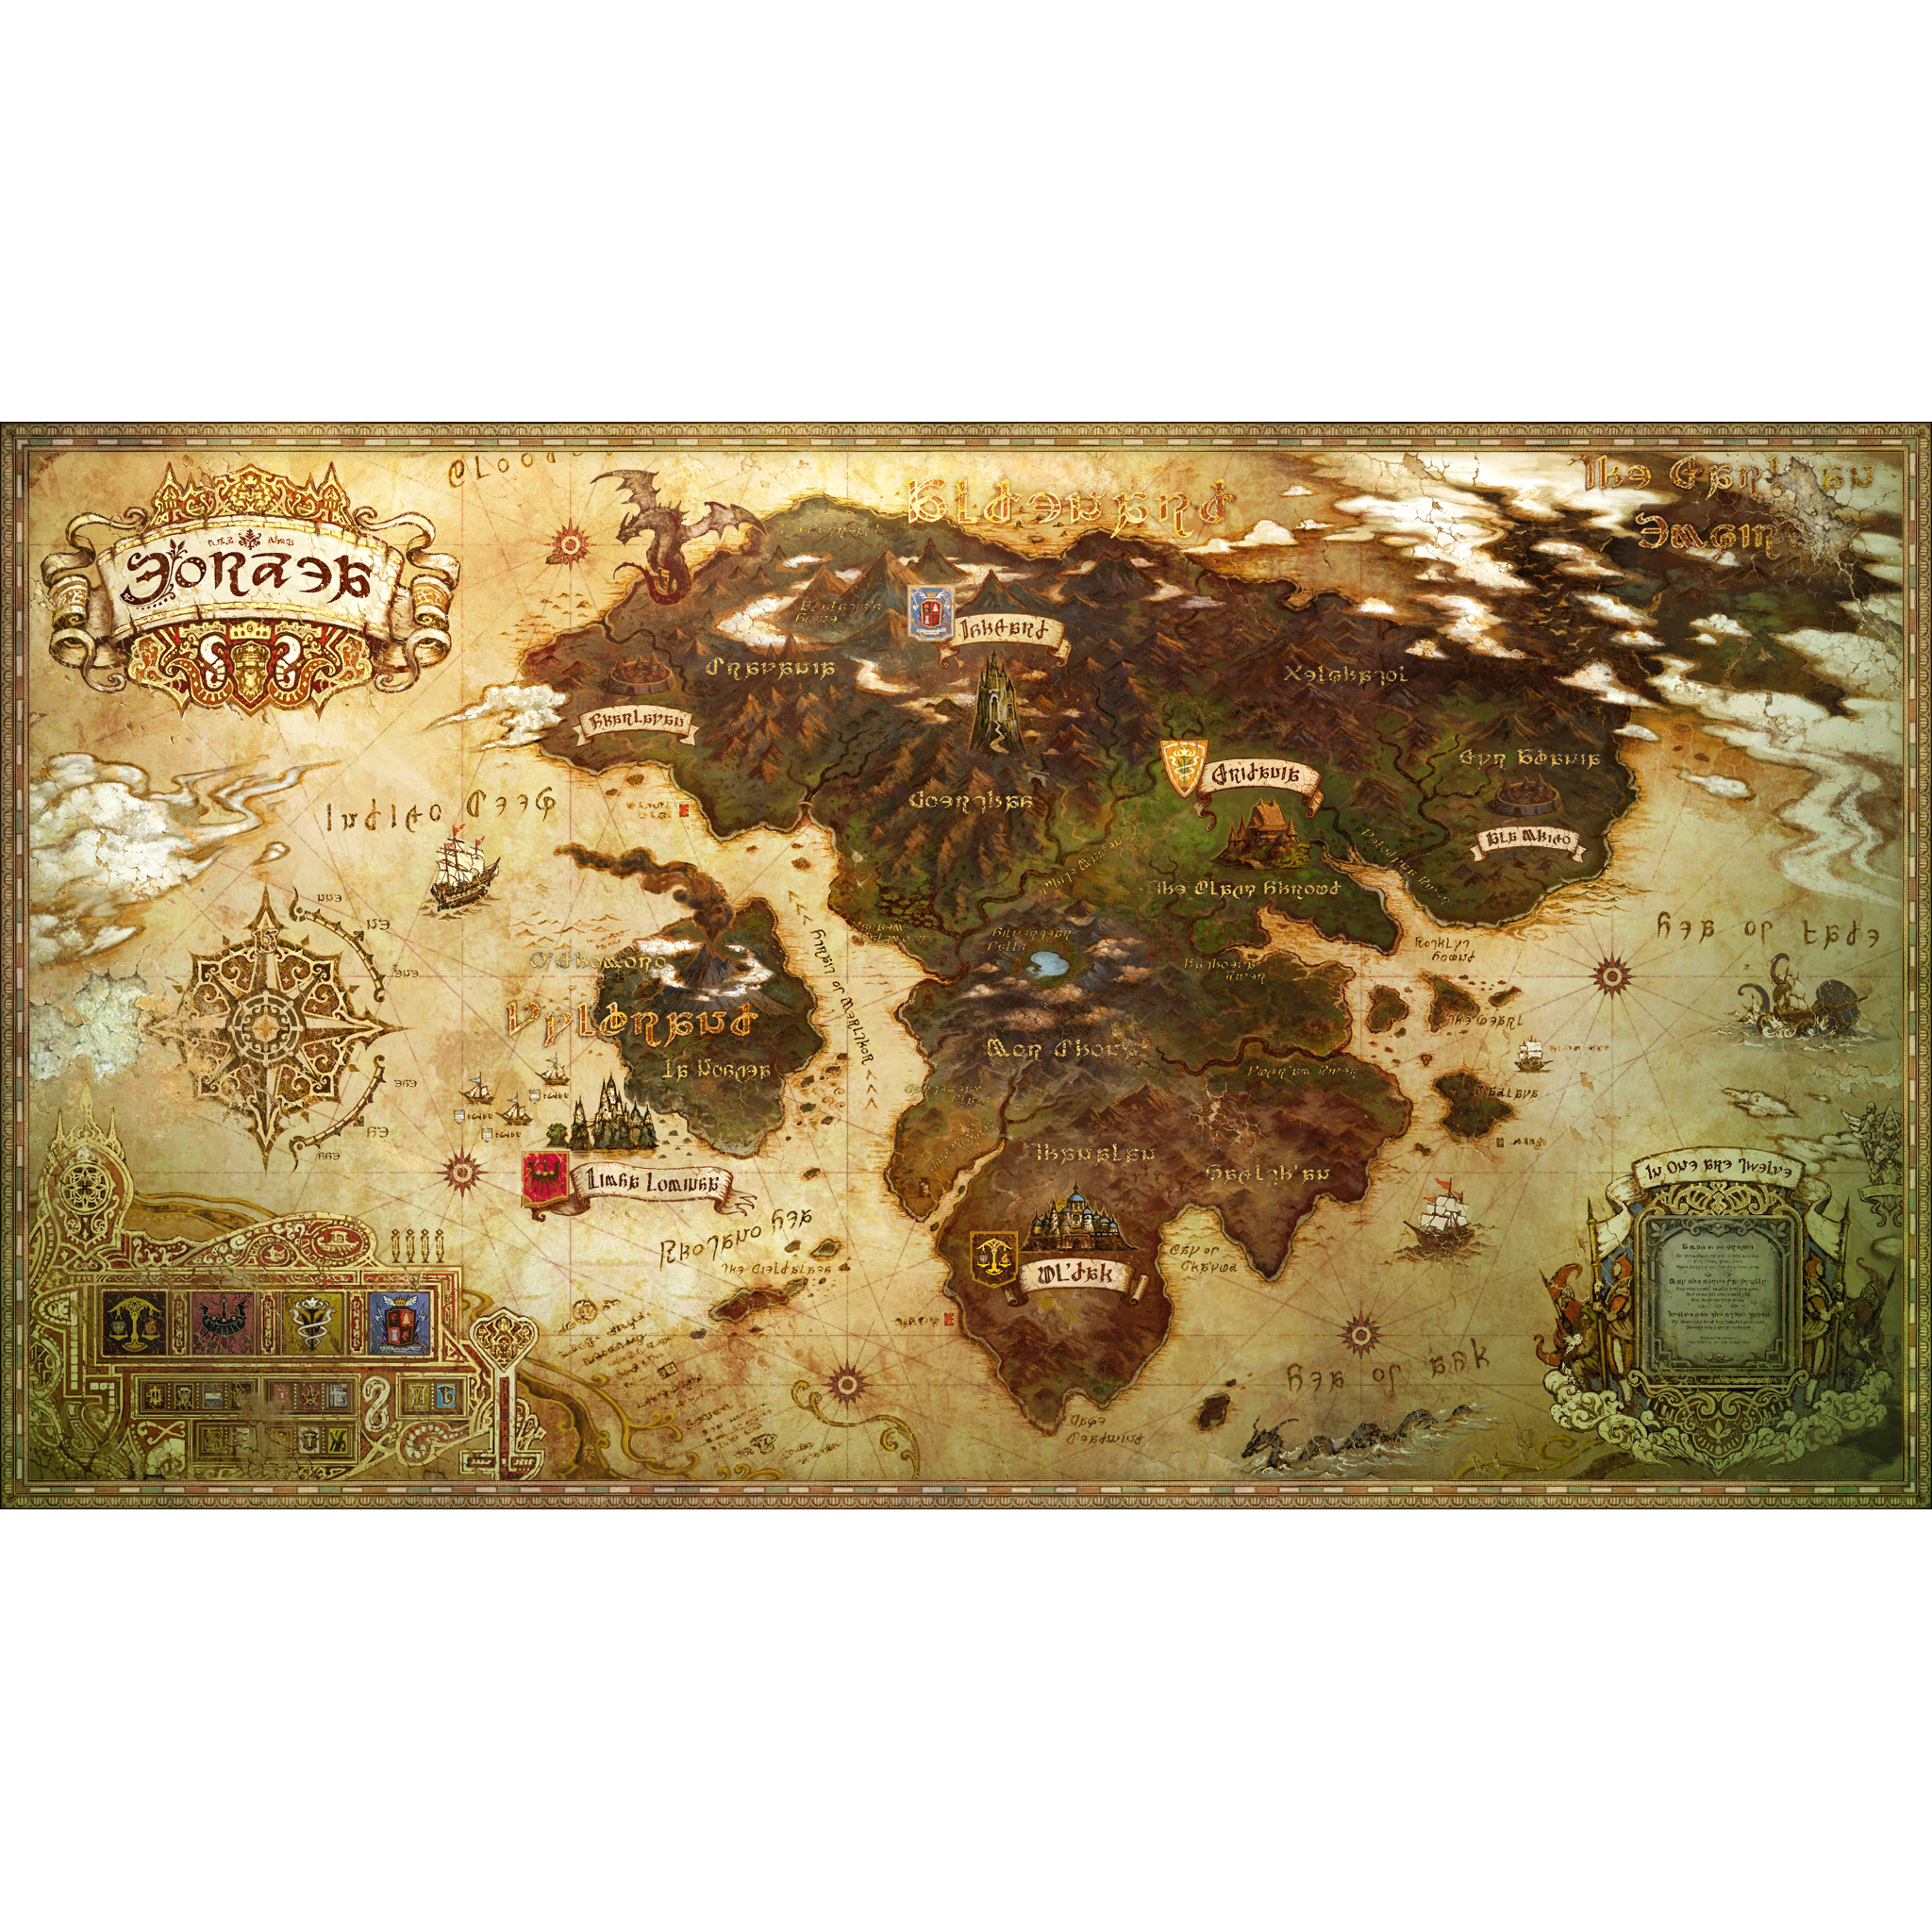 Eorzean Map